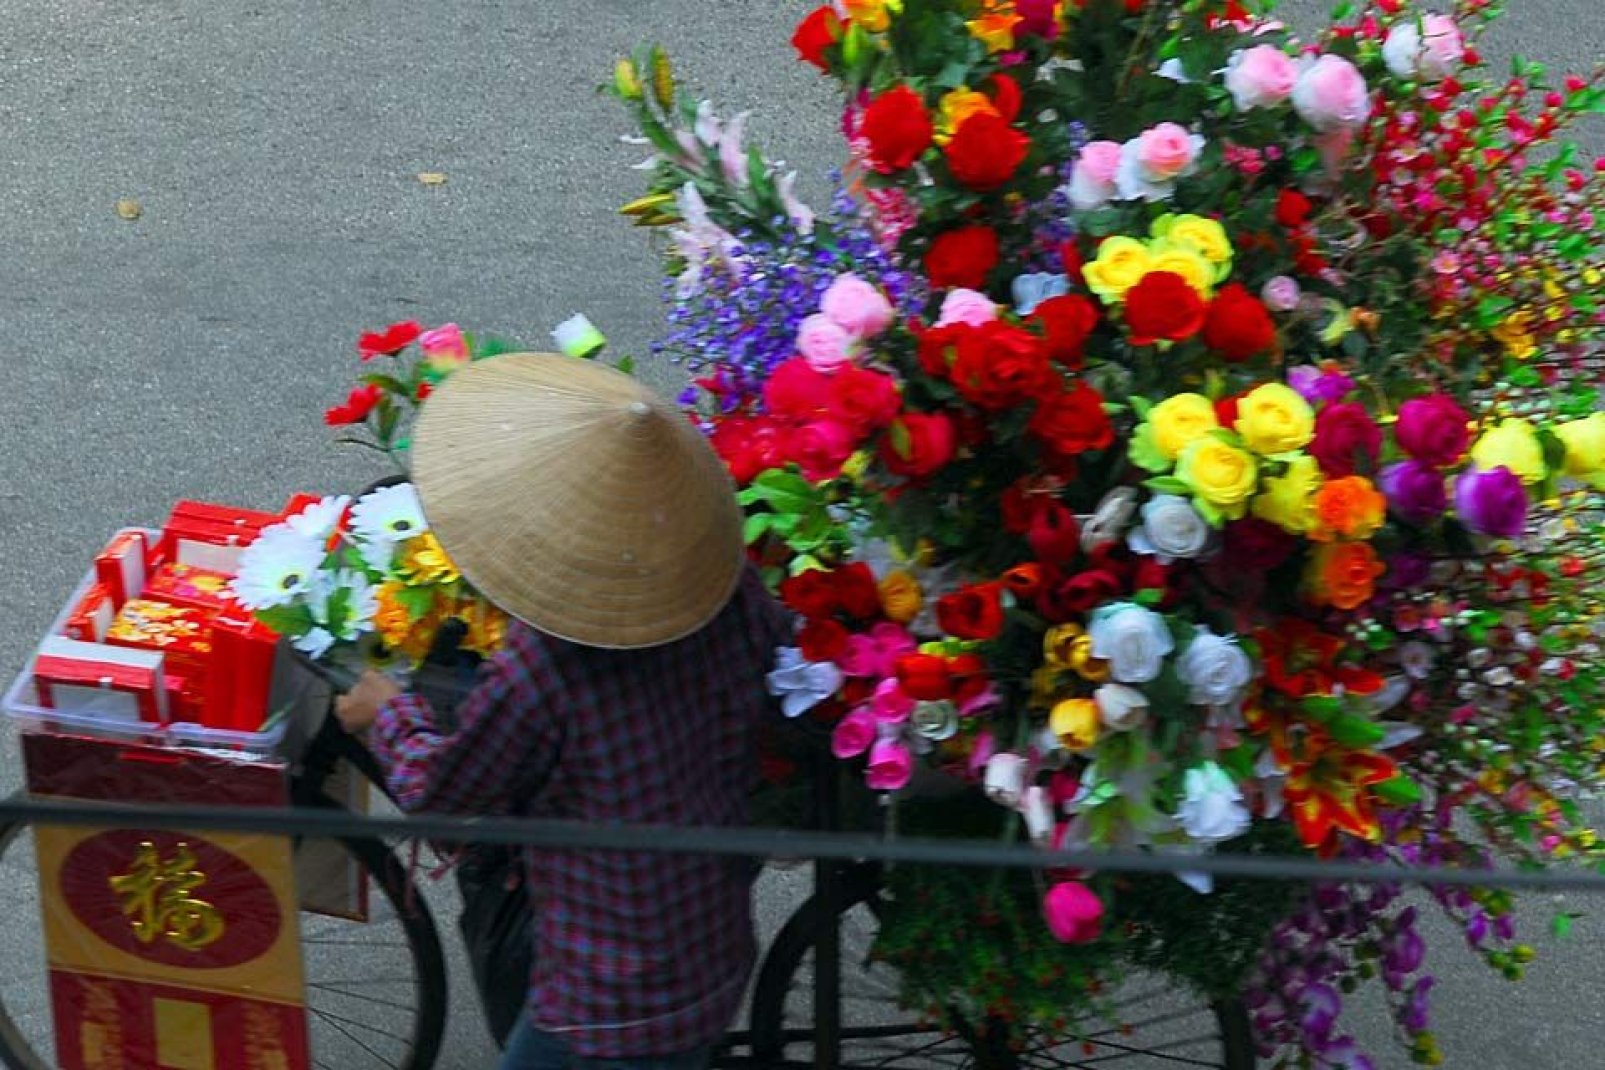 Quang Ba è il più grande mercato all'ingrosso di fiori di Hanoi. Apre tutti i giorni a partire dalle 2:00 del mattino.